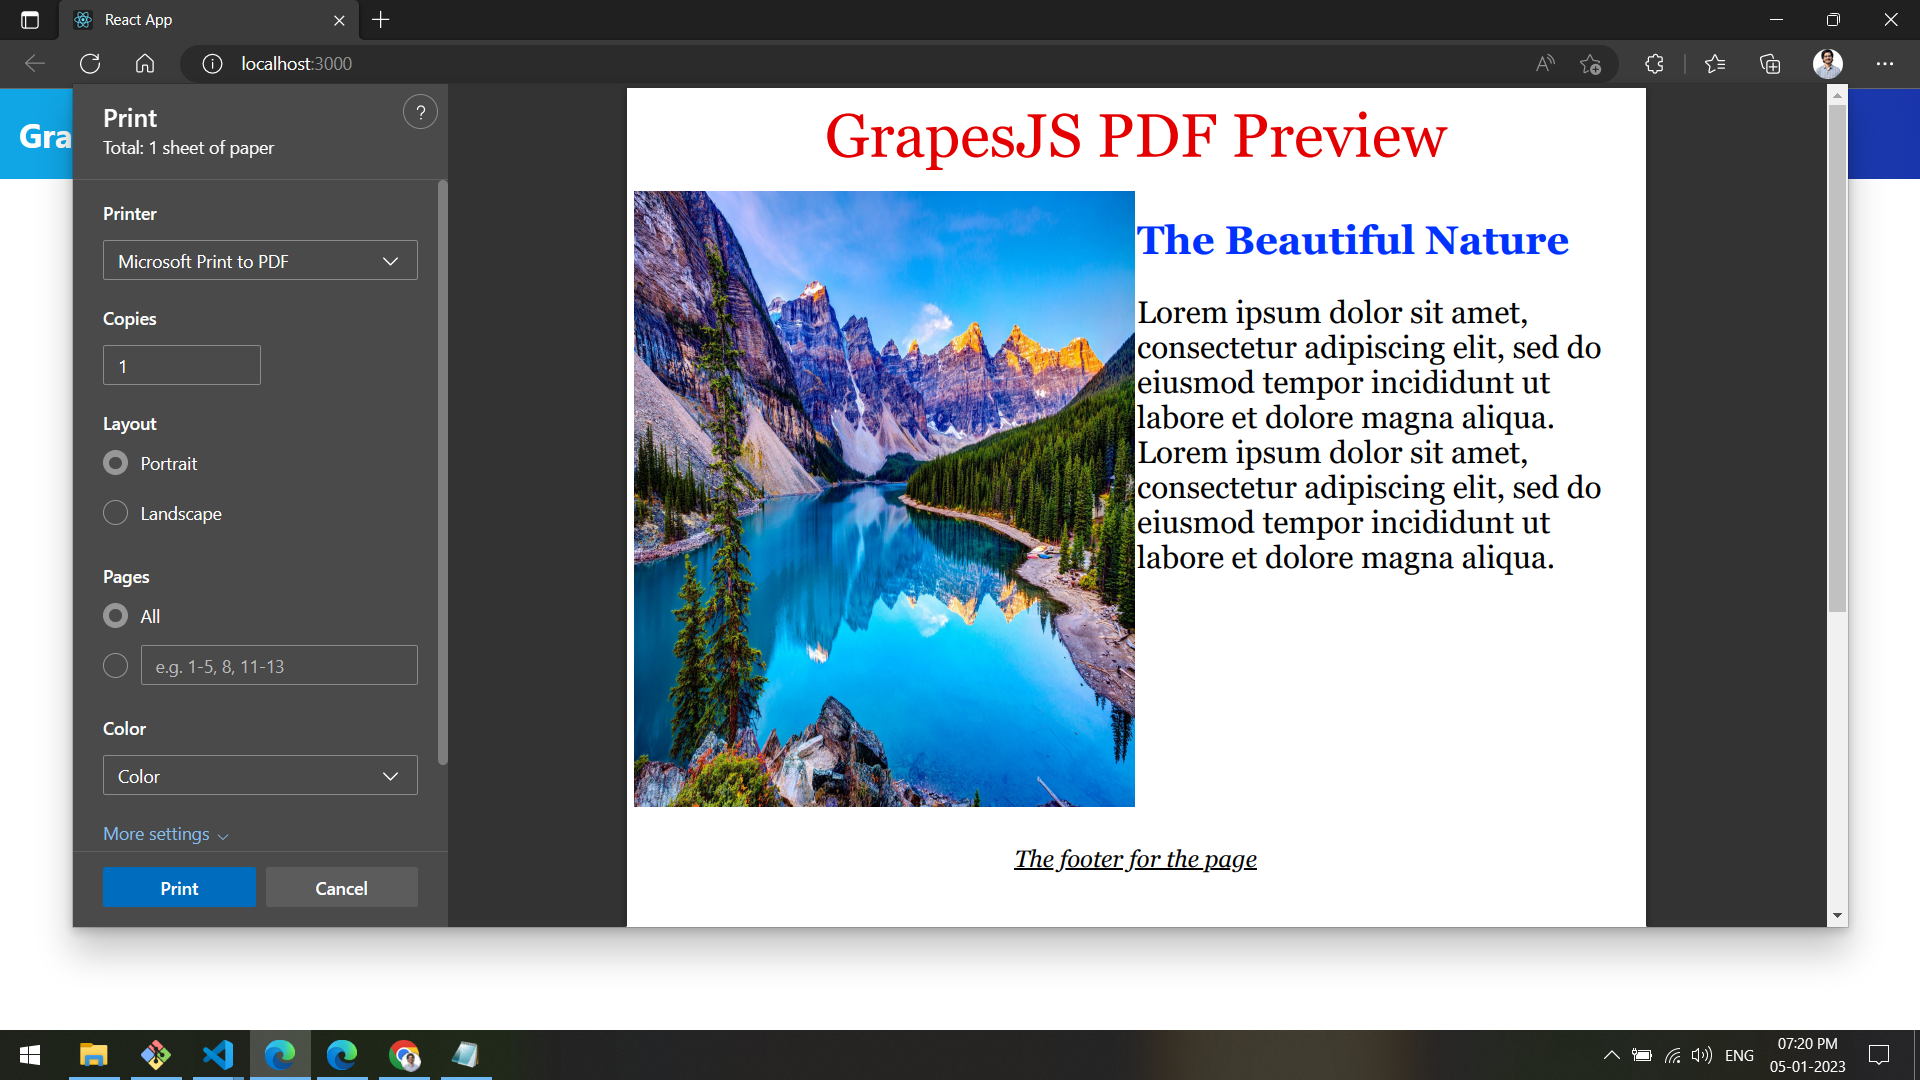 grapesjs-canvas-content-preview-in-pdf